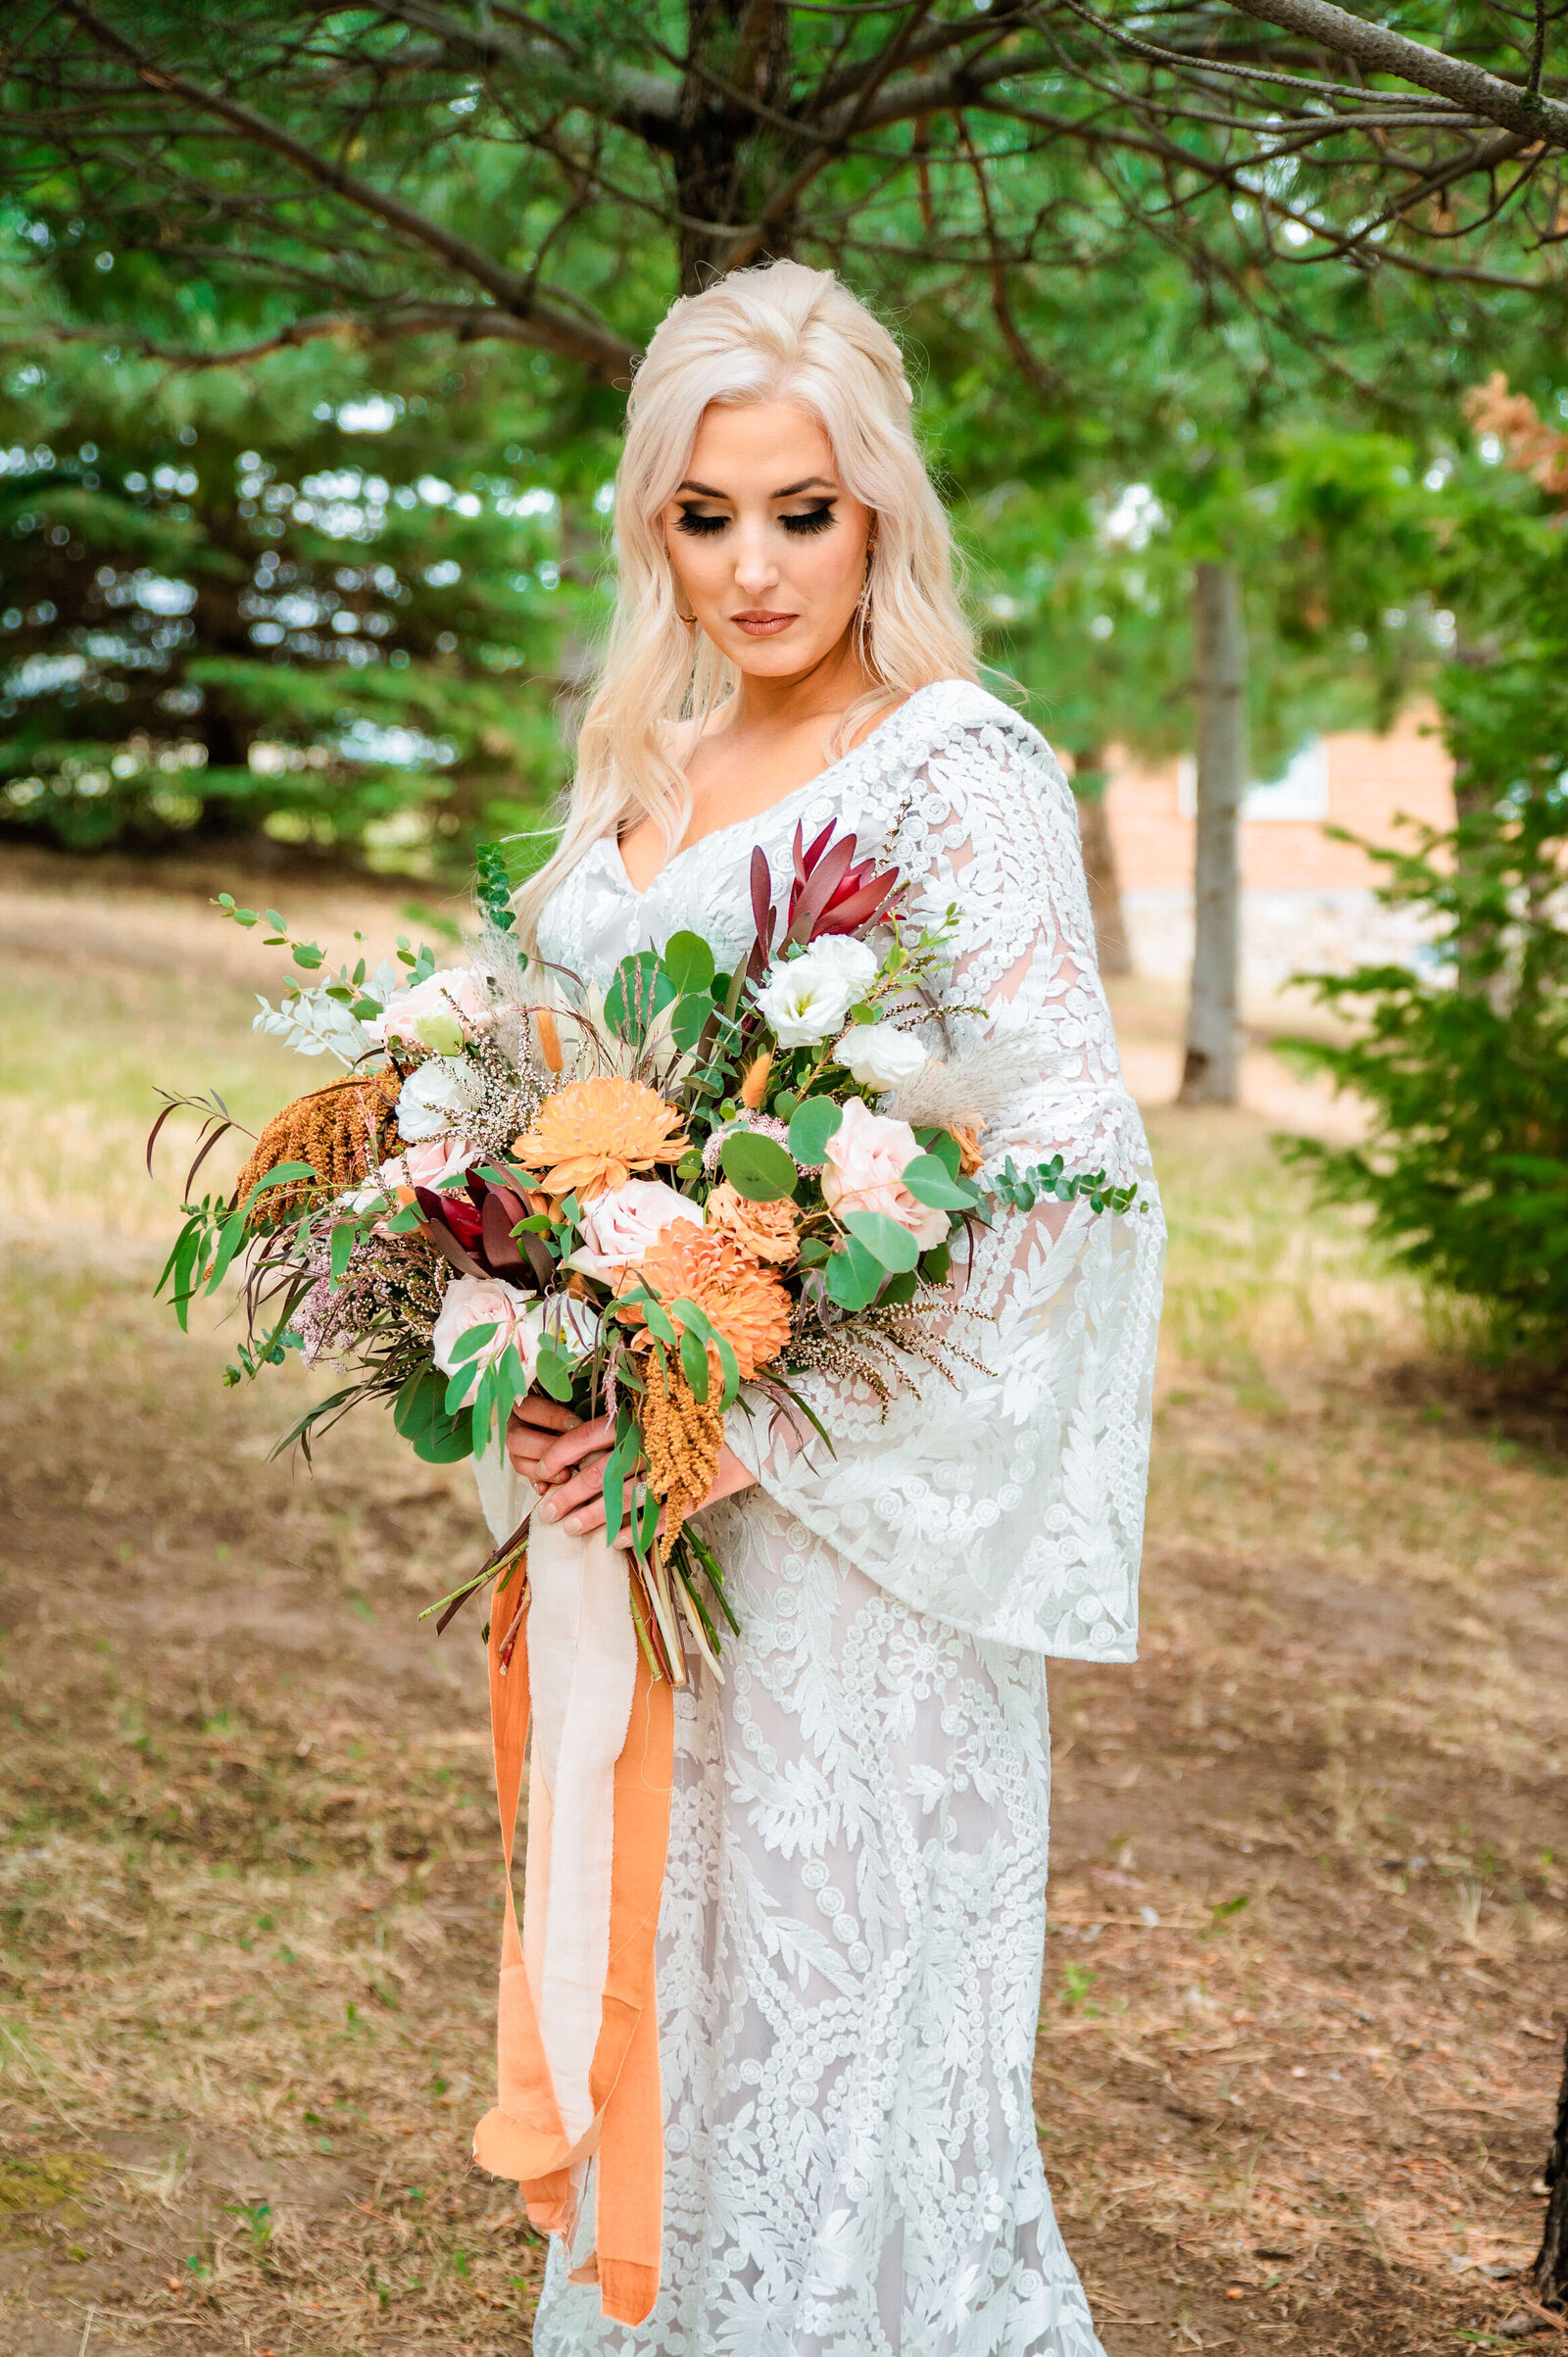 Jackson Hole videographer captures bride holding bridal bouquet